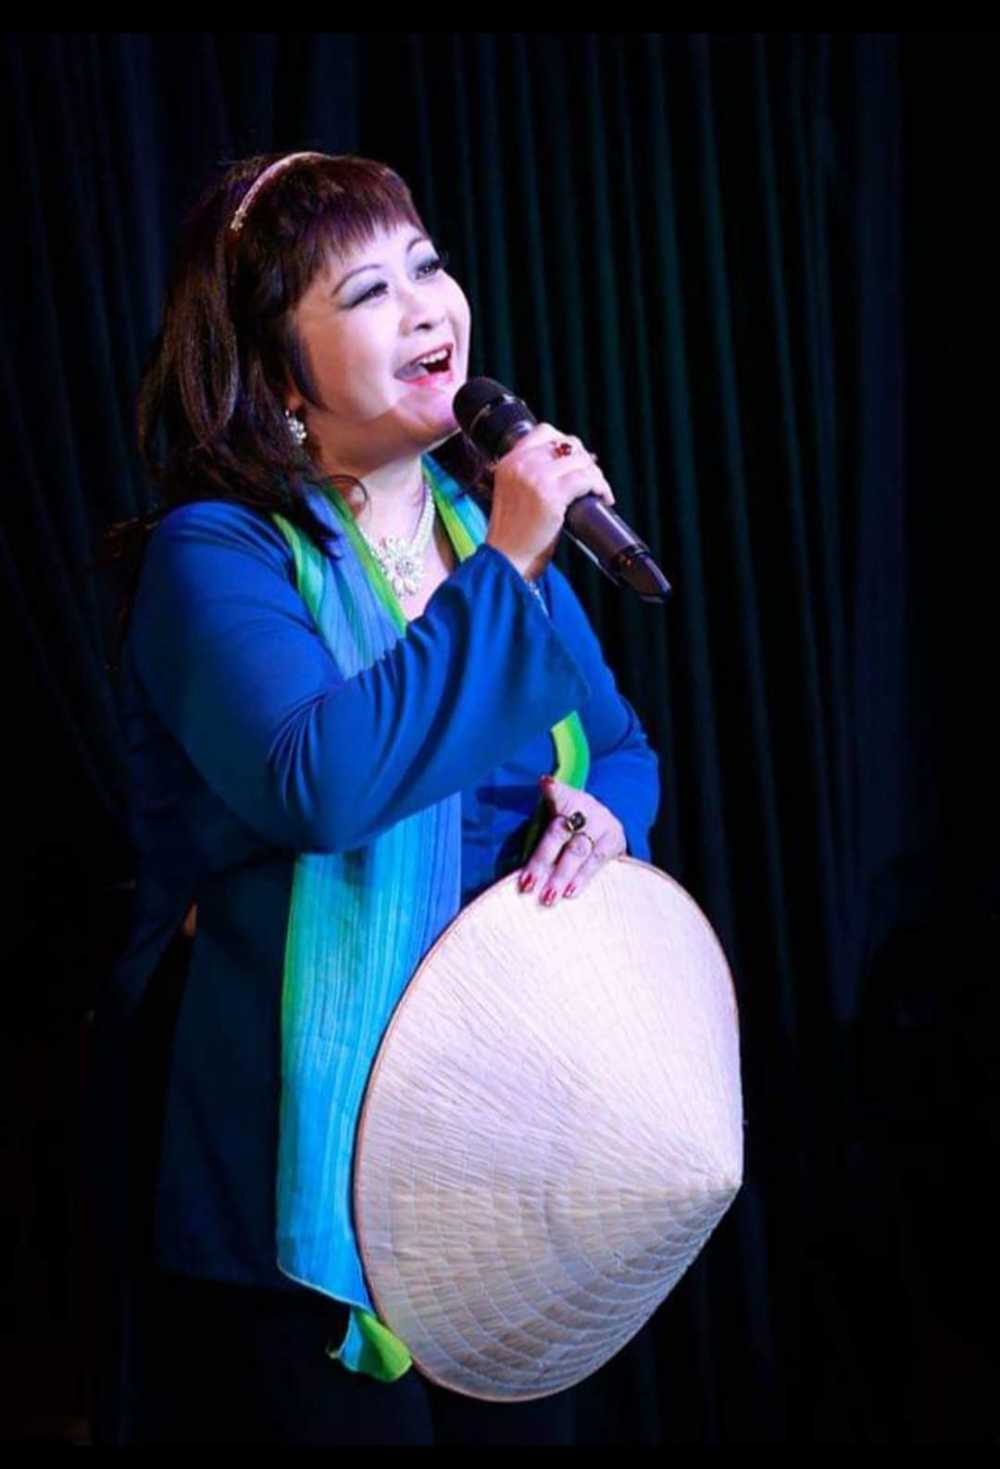  
Nhiều khán giả Việt cũng quen mặt với nữ ca sĩ Ái Thanh. (Ảnh: FBNV)